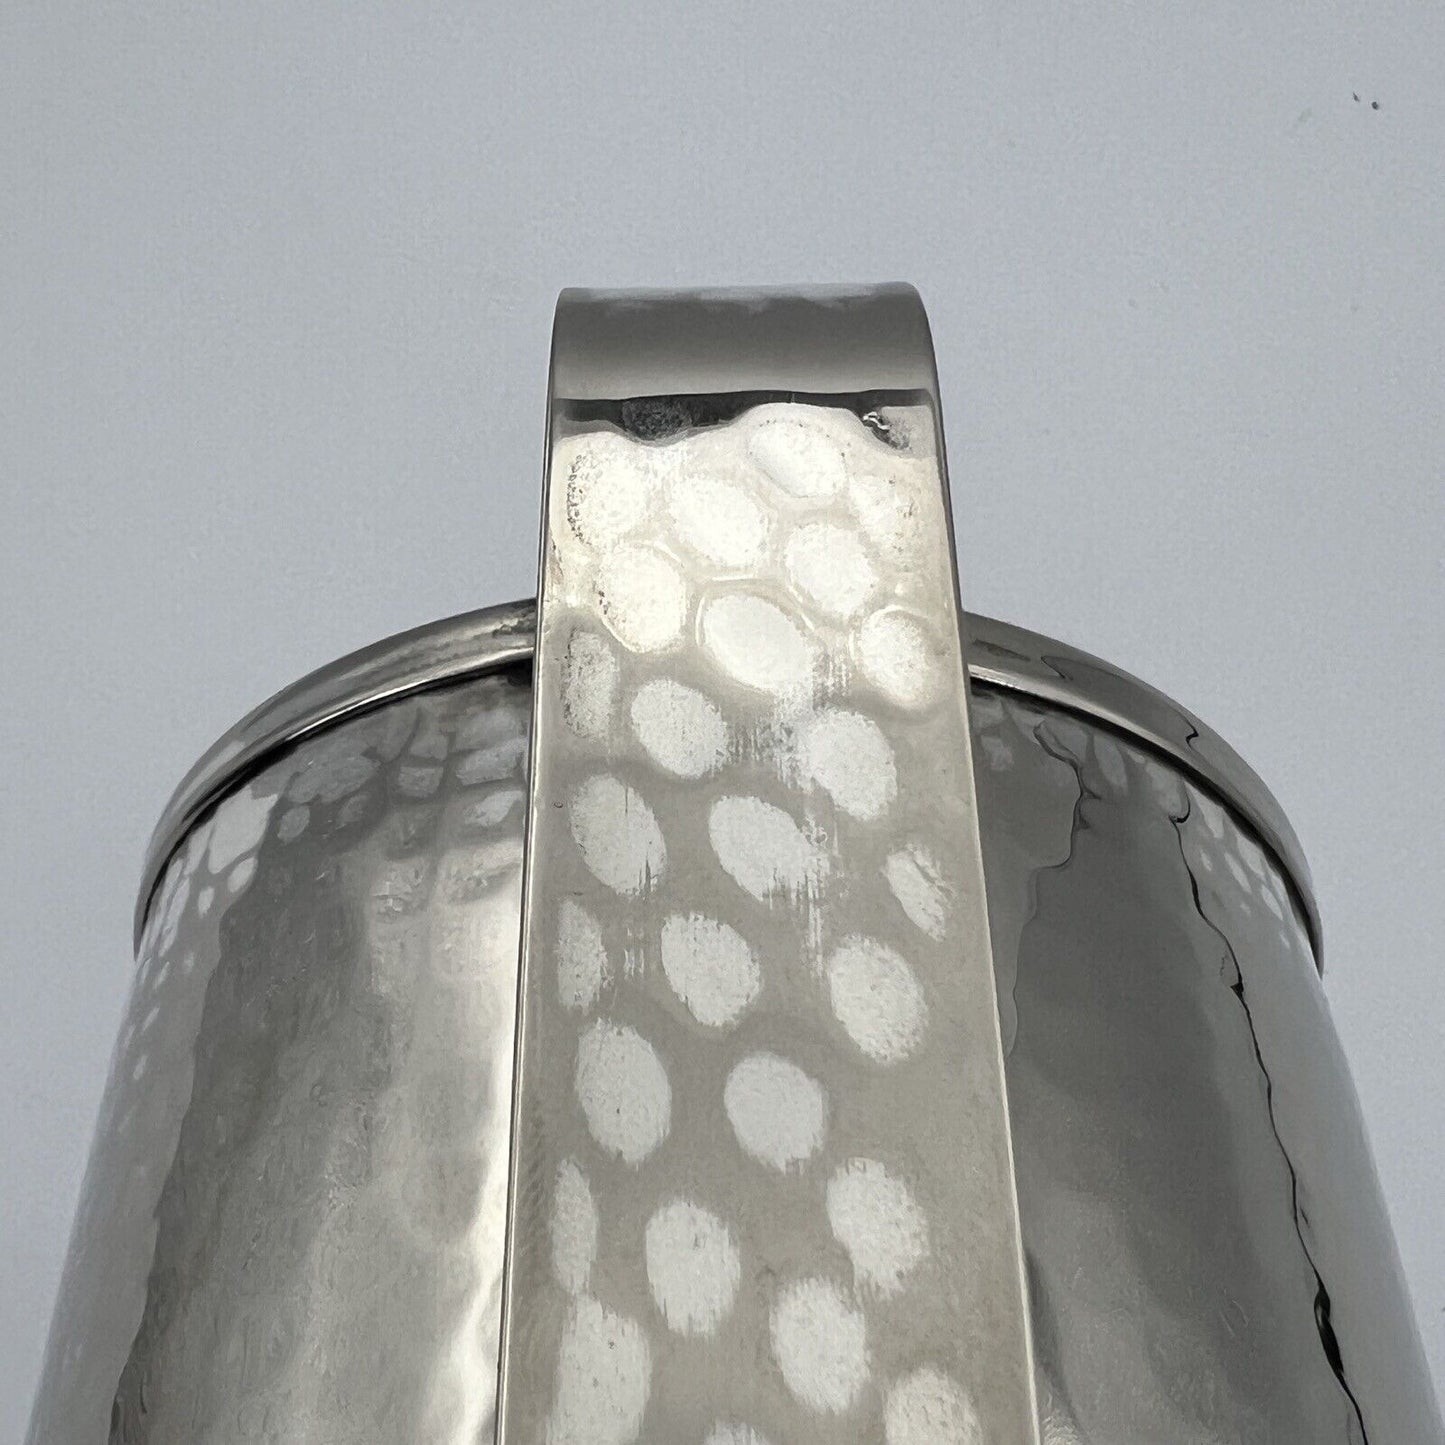 Caraffa in argento silver plated Versatoio brocca vintage Callegaro ORIGINALE